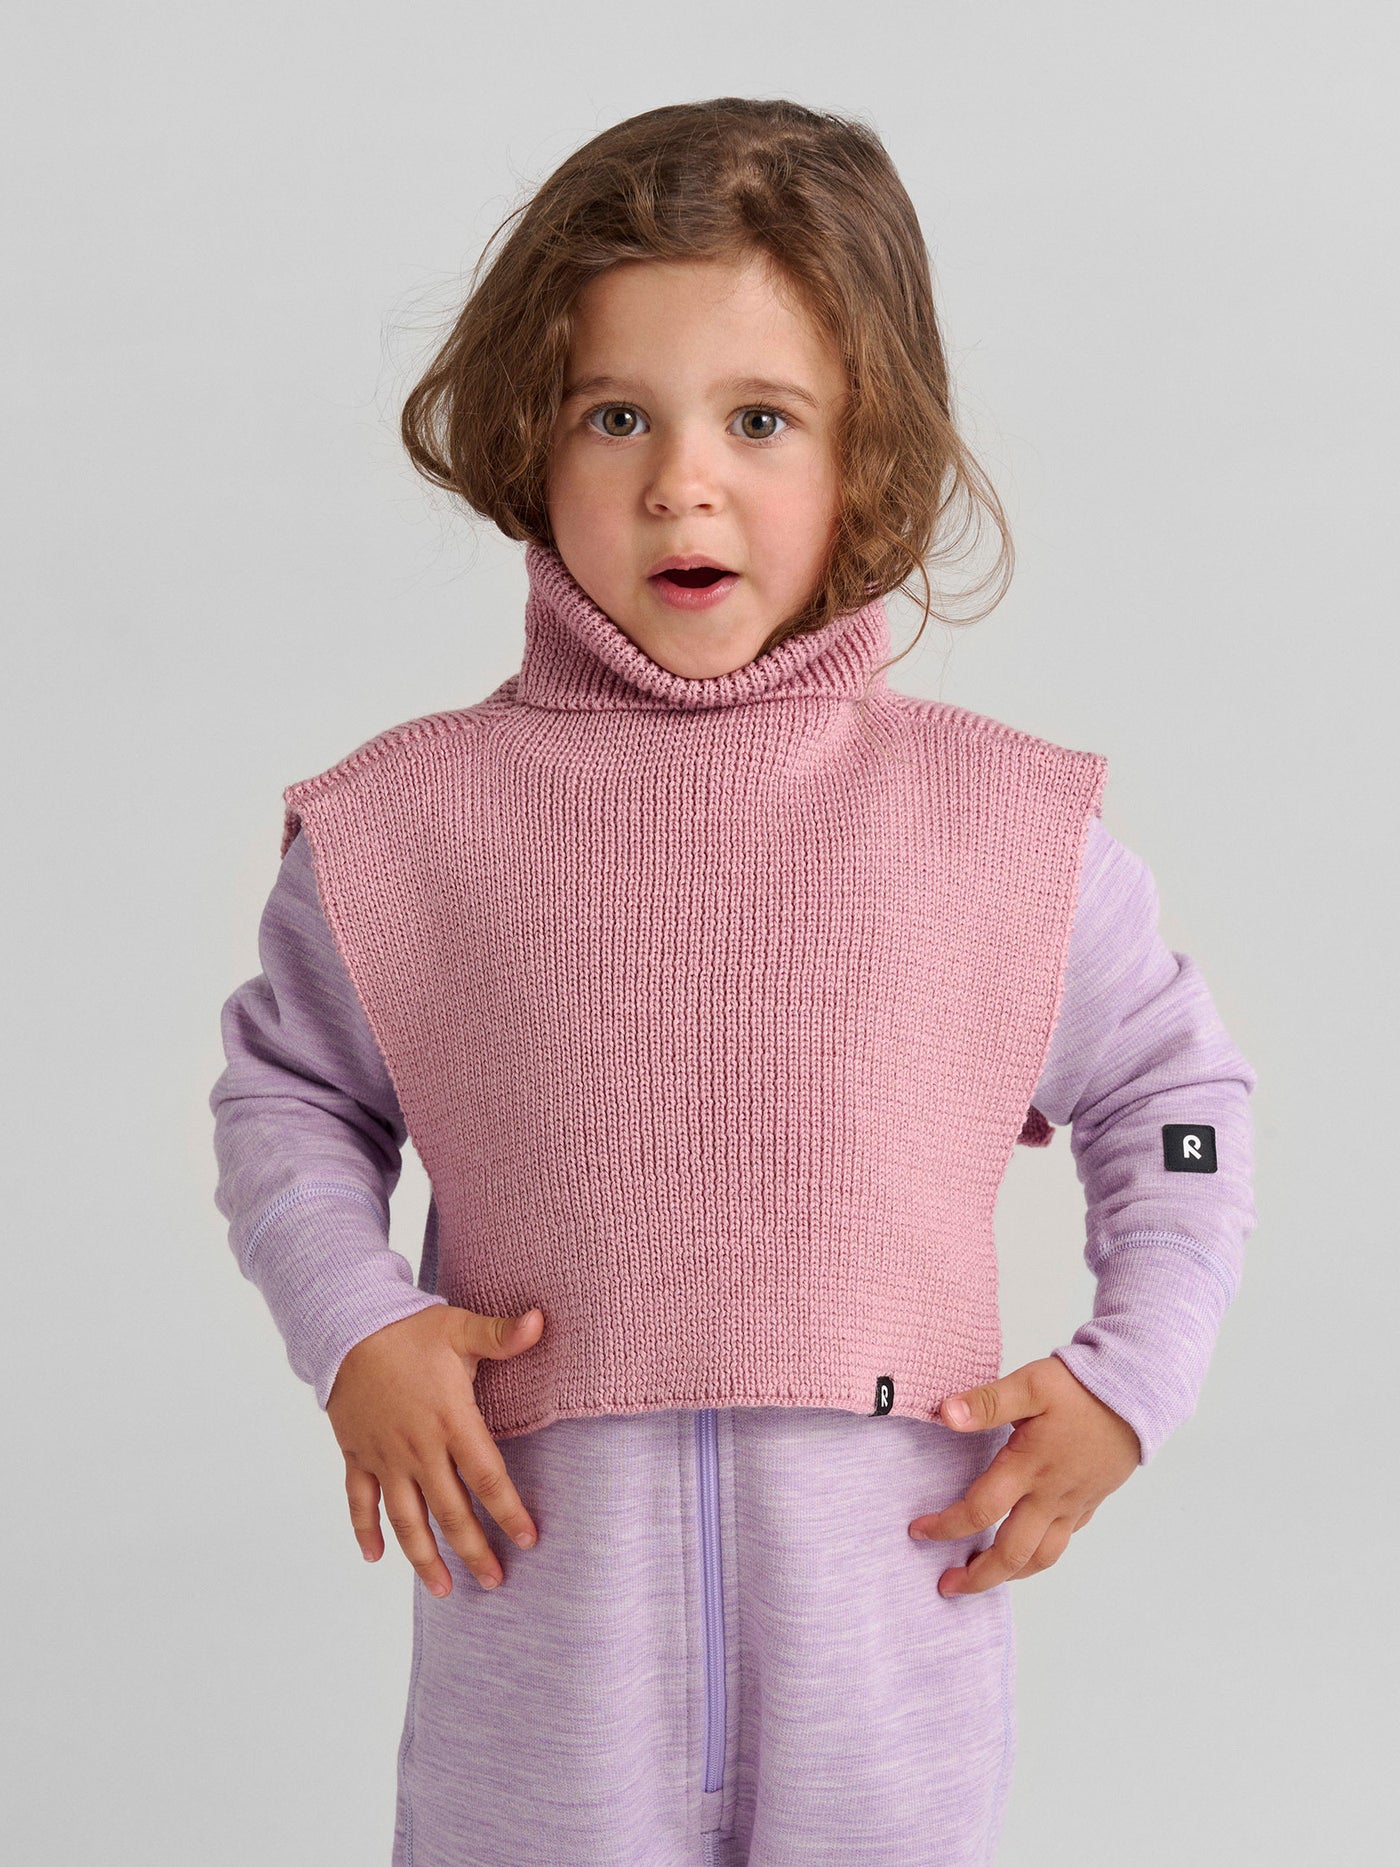 Reiman Kaulain -kauluri Grey Pink -sävyssä lapsen päällä kuvattuna